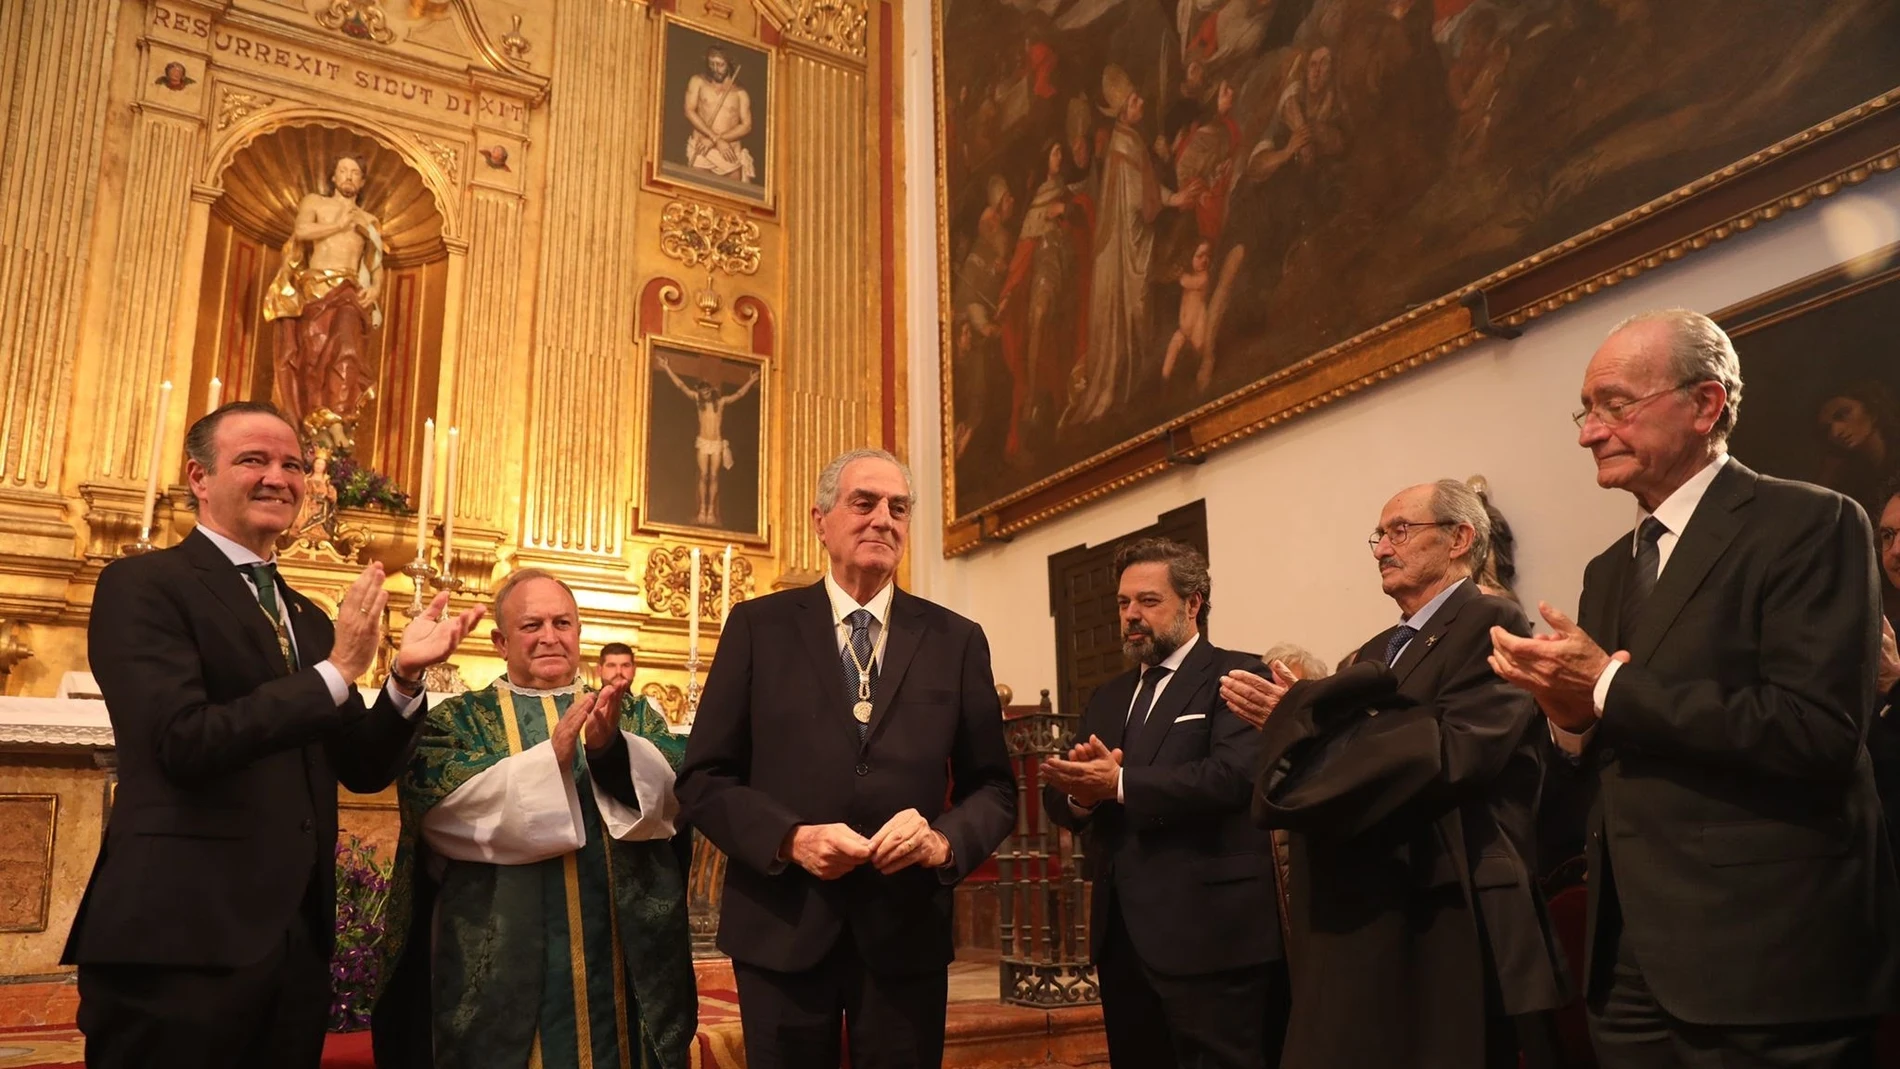 El acto de entrega de la medalla tuvo lugar en la iglesia de San Julián con la asistencia de autoridades locales